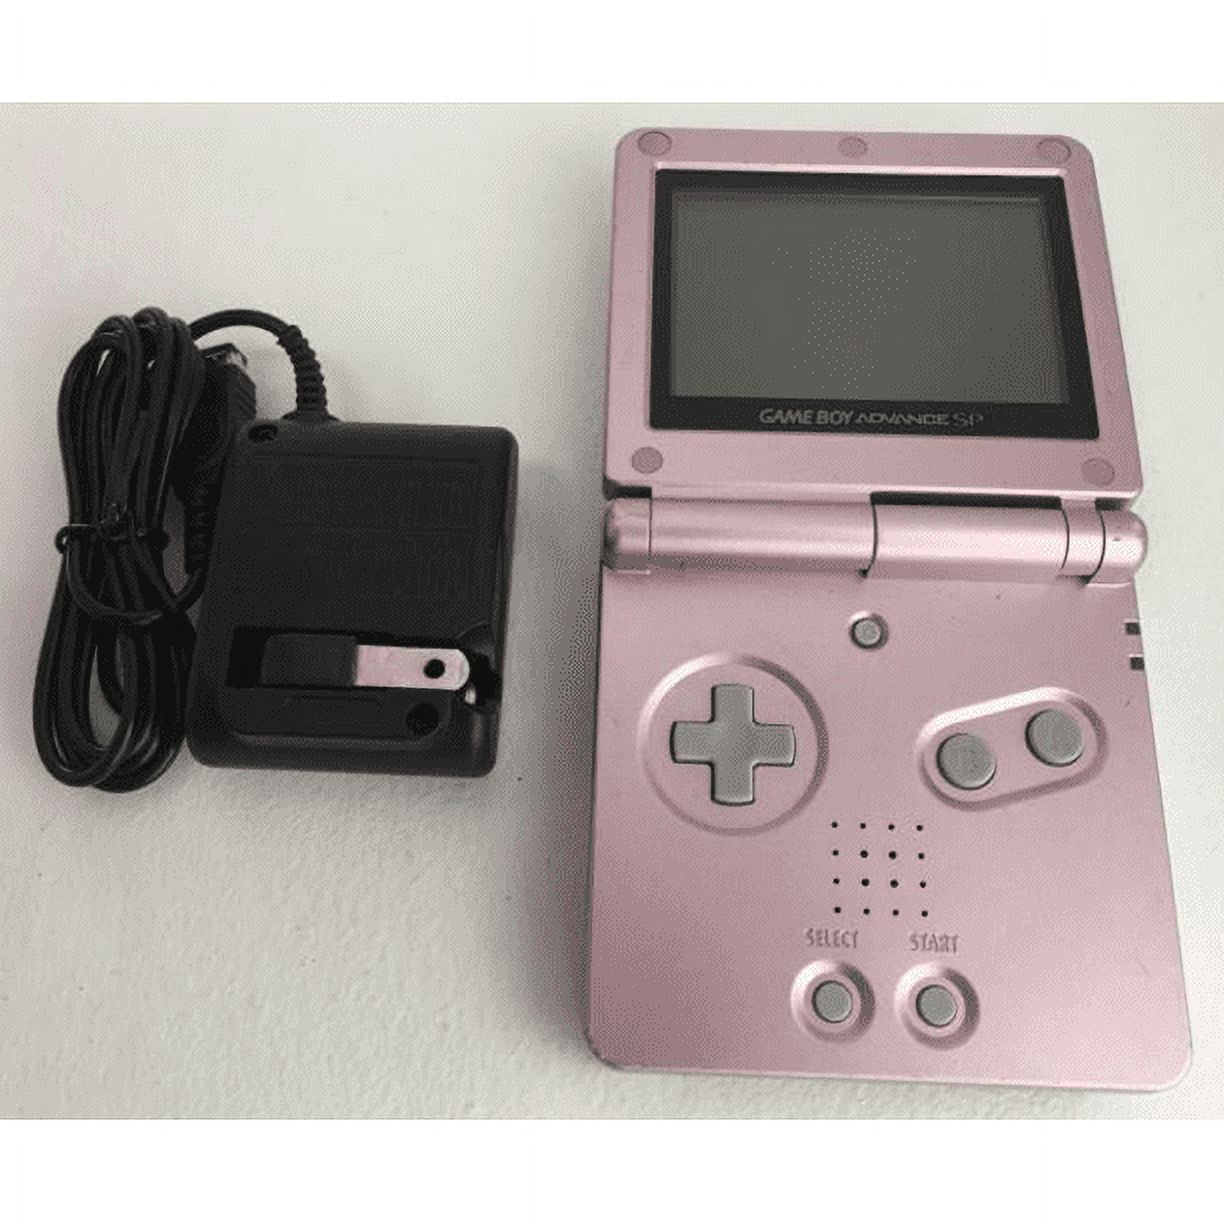 Nintendo Game Boy Advance SP wallpaper - pink, 2880 x 1800 …